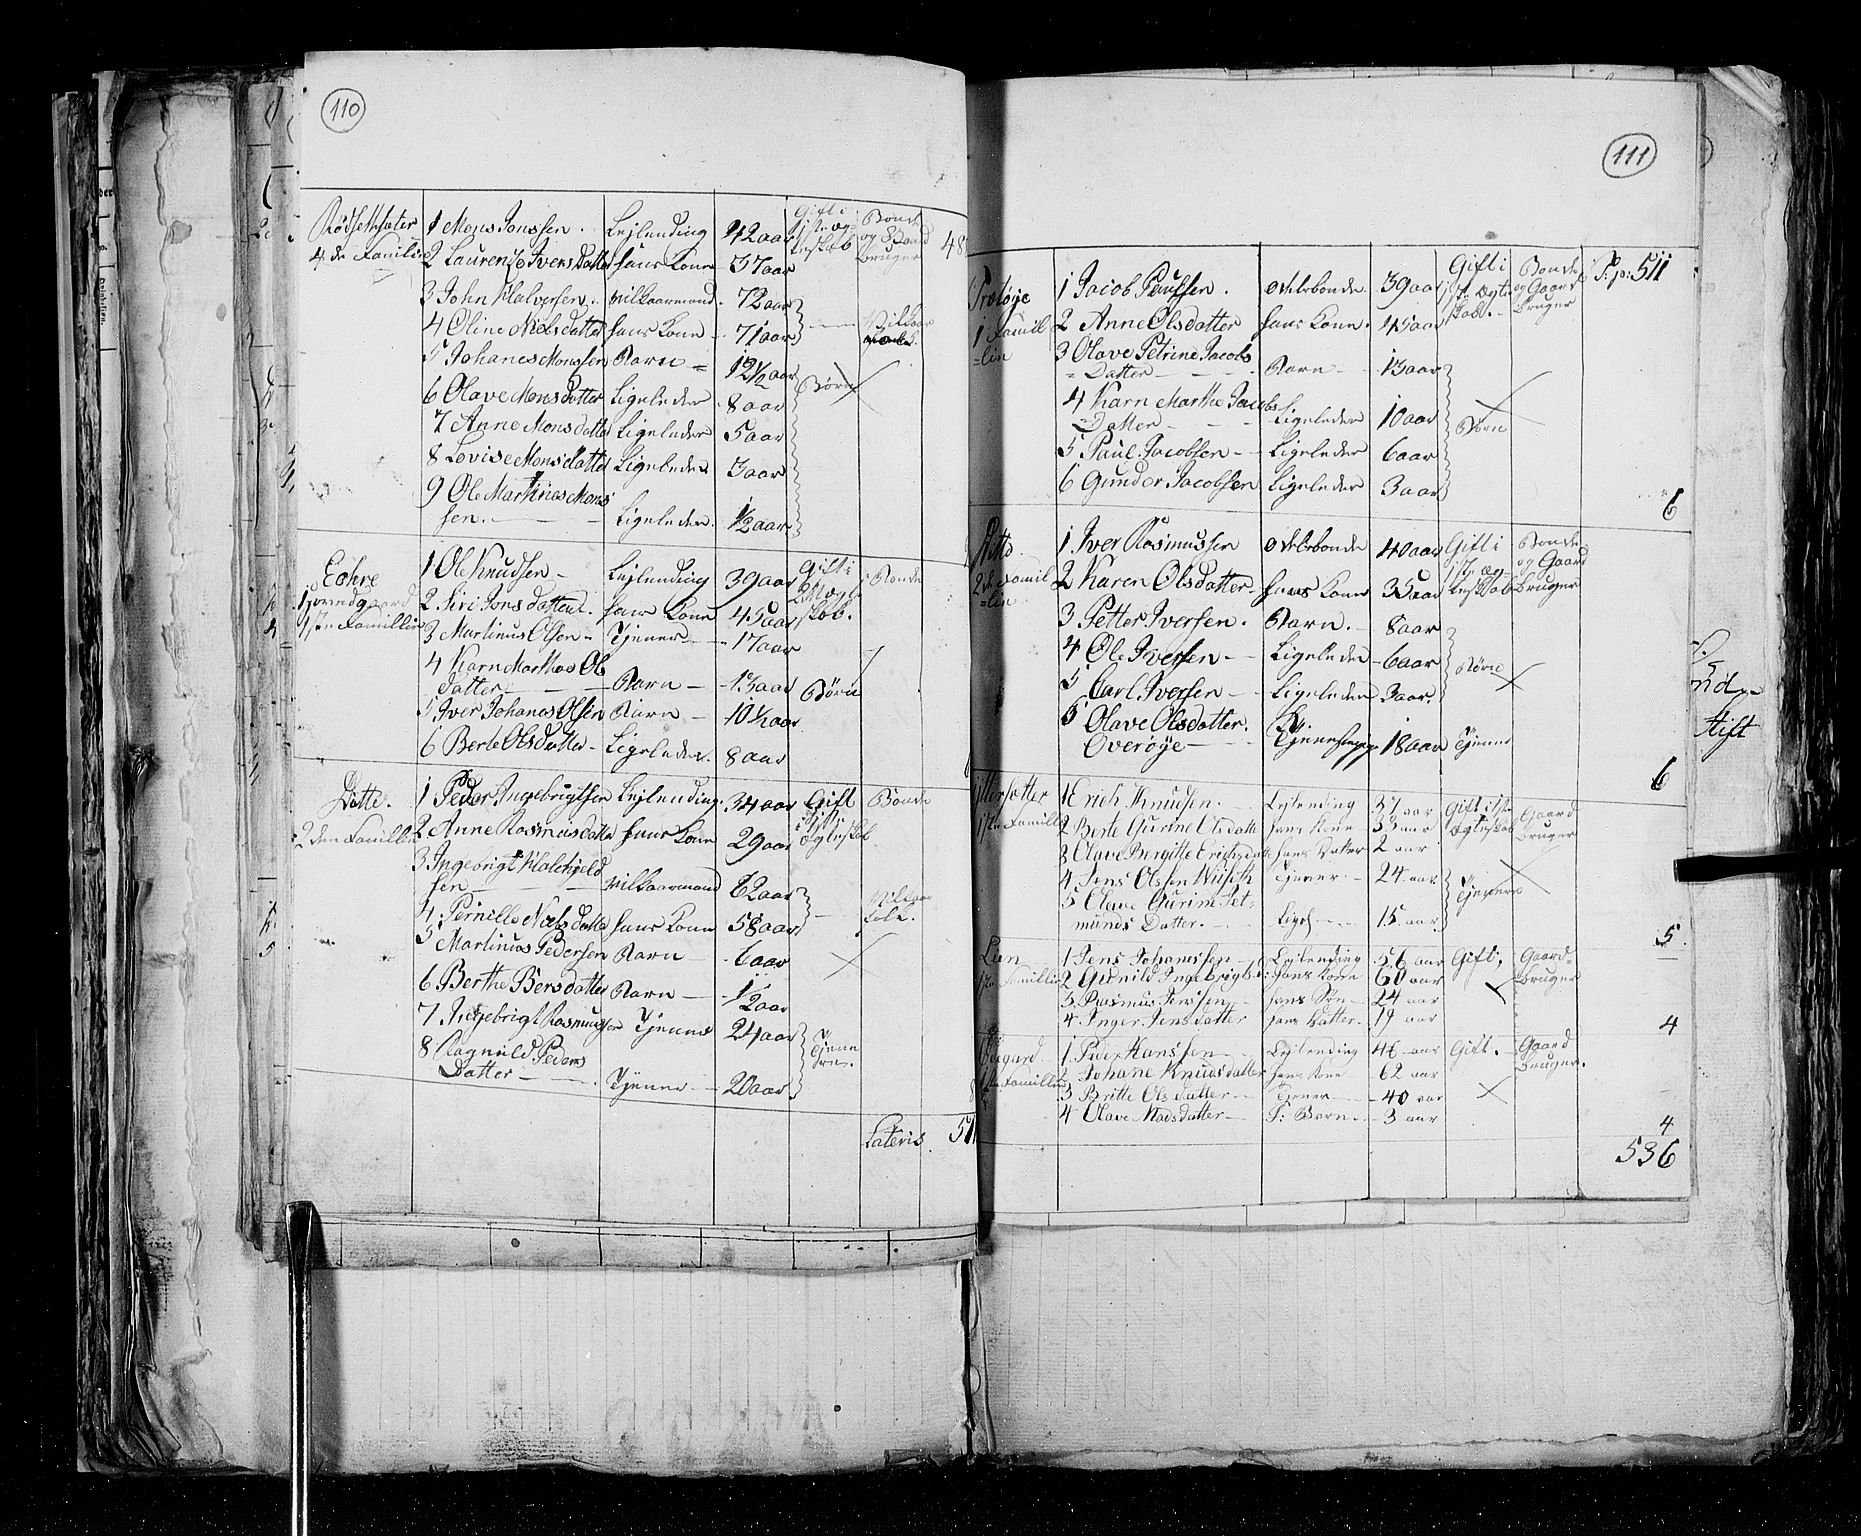 RA, Census 1825, vol. 15: Romsdal amt, 1825, p. 110-111